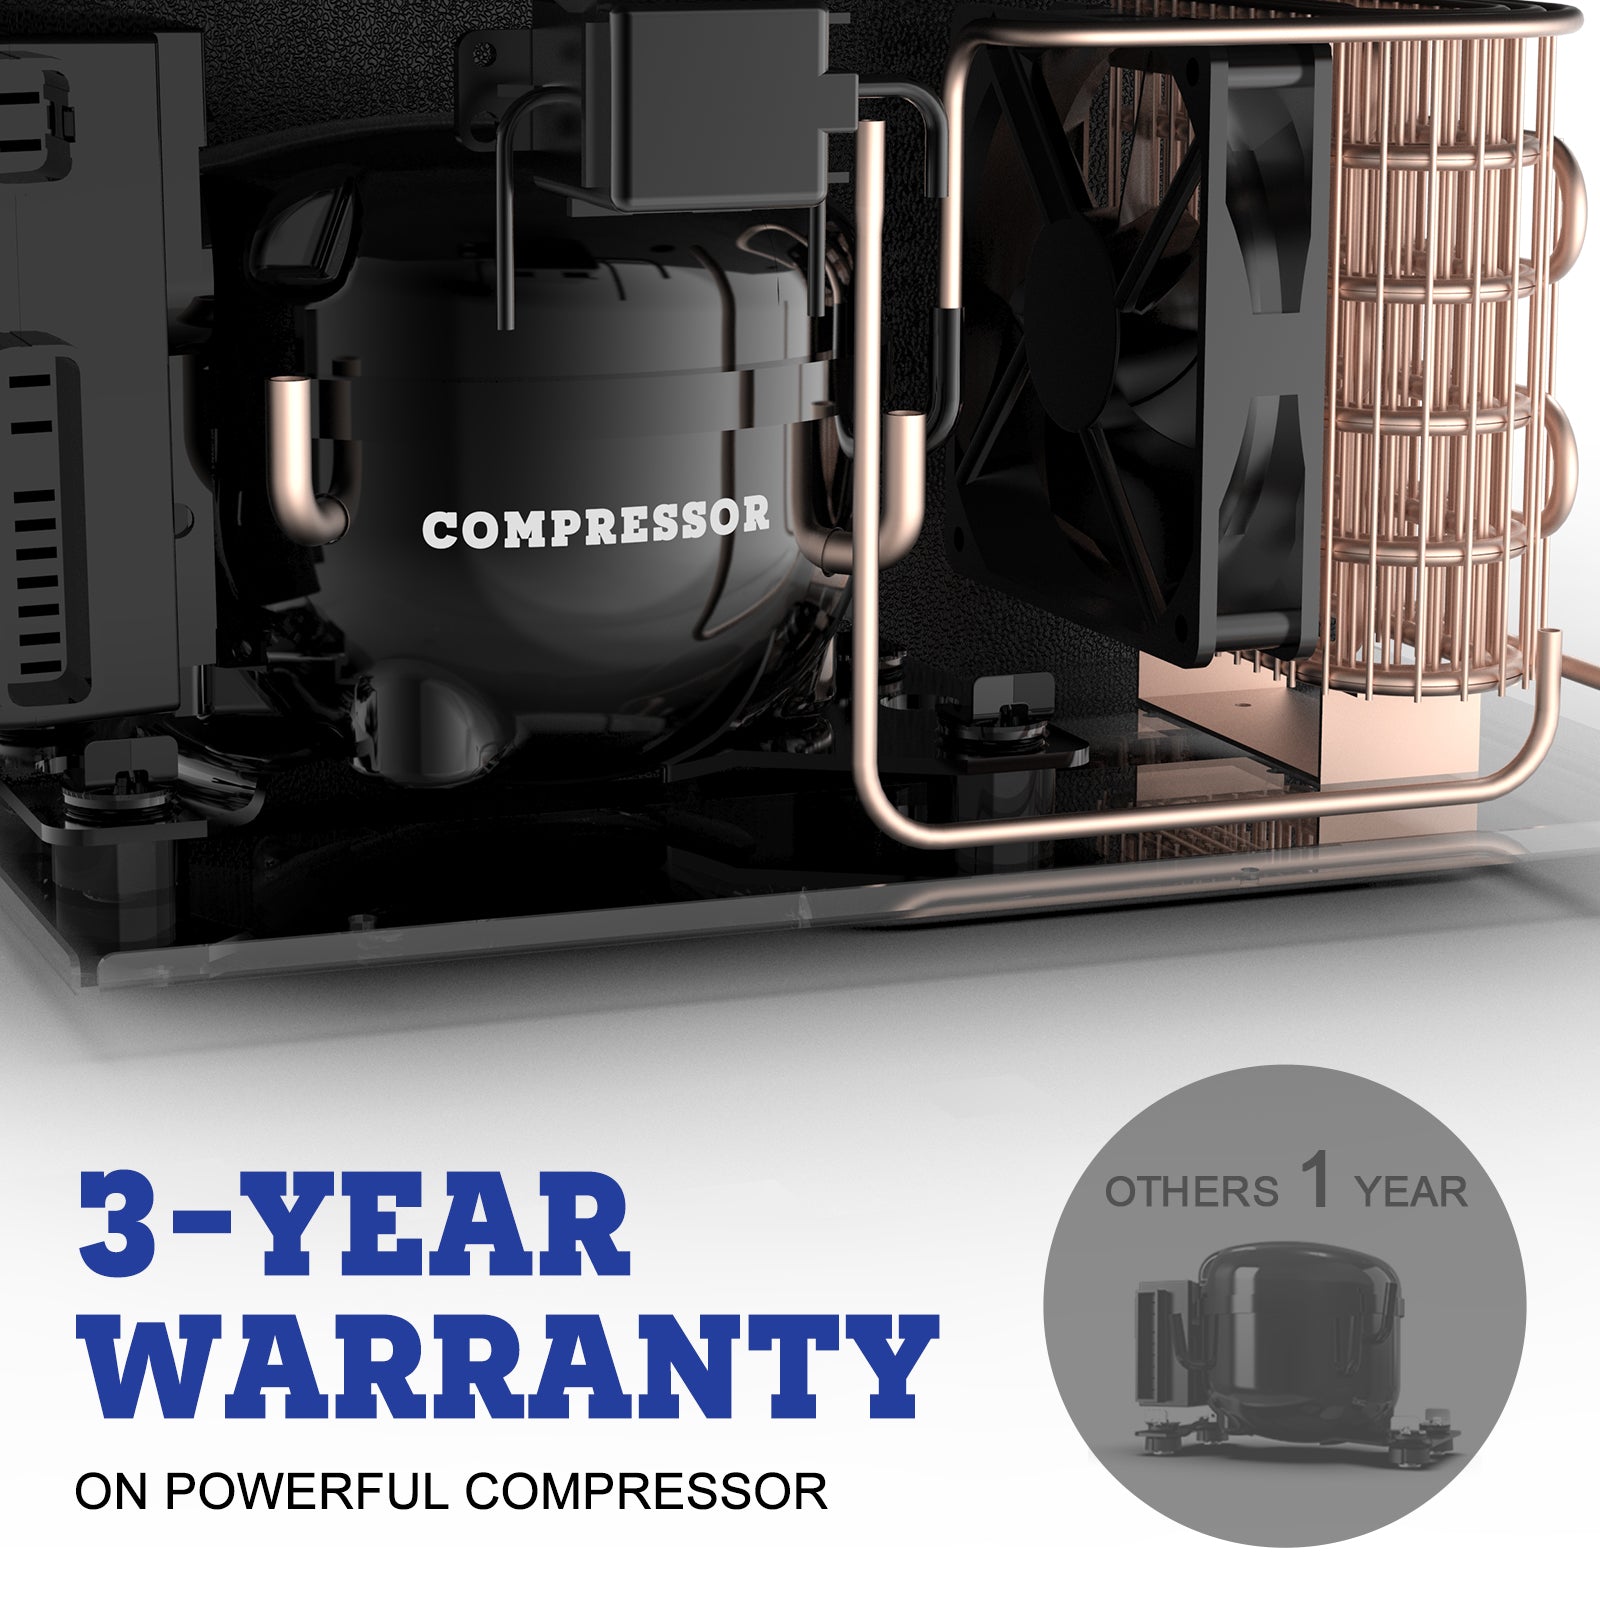 $229 Only | Setpower 37 Quart PT35 Dual Zone Portable 12V Compressor Fridge